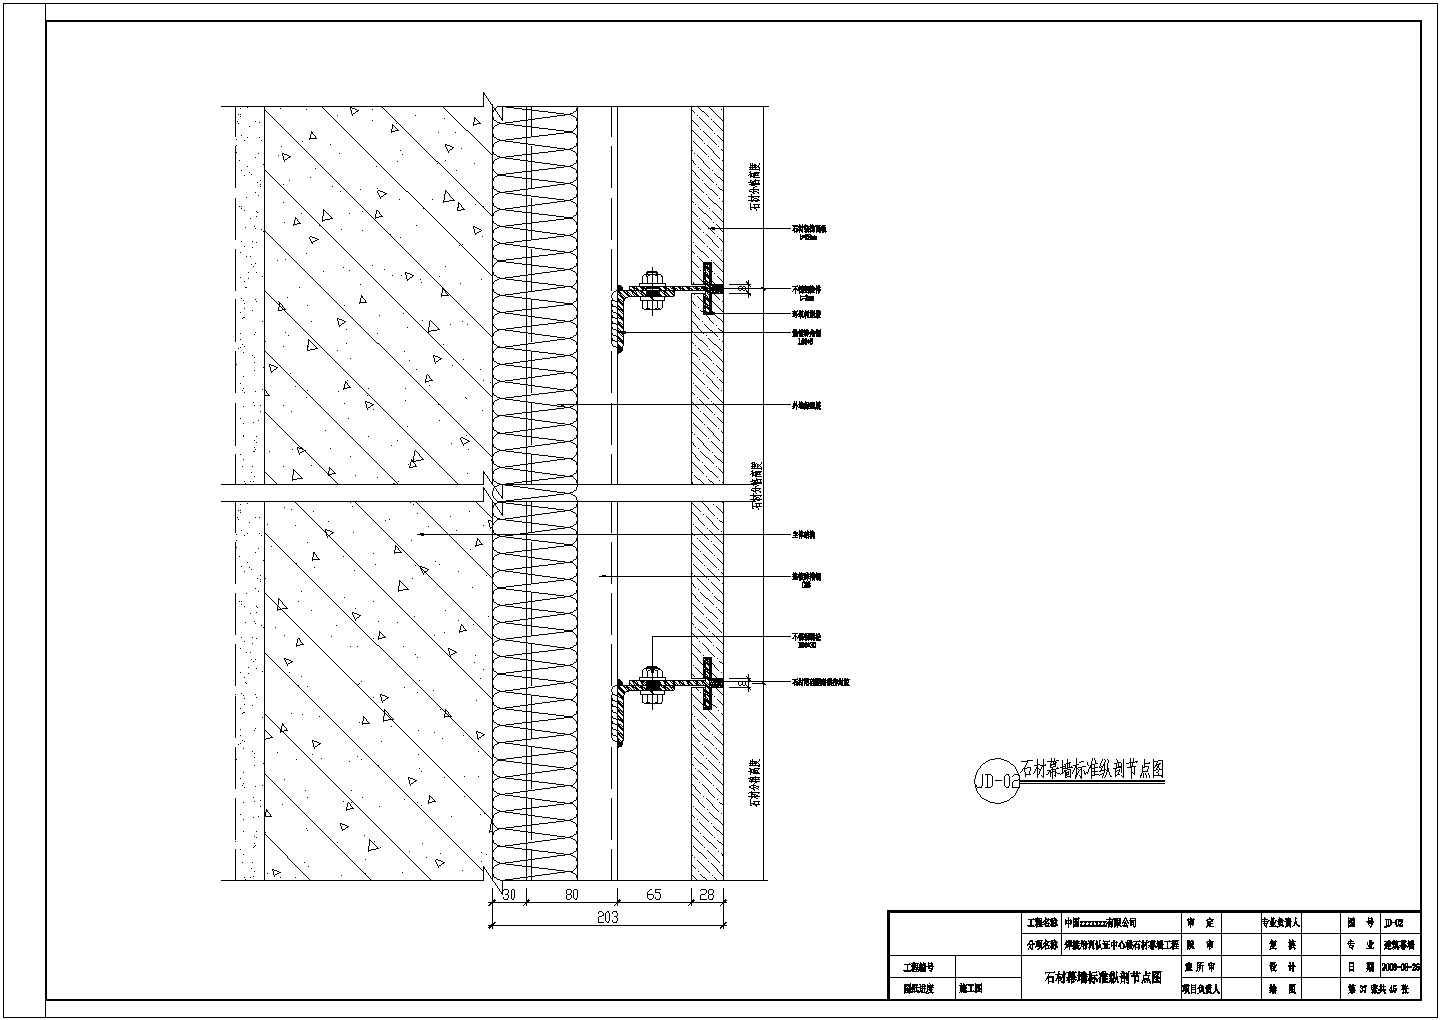 某焊接培训中心石材幕墙结构工程图纸(含计算书)